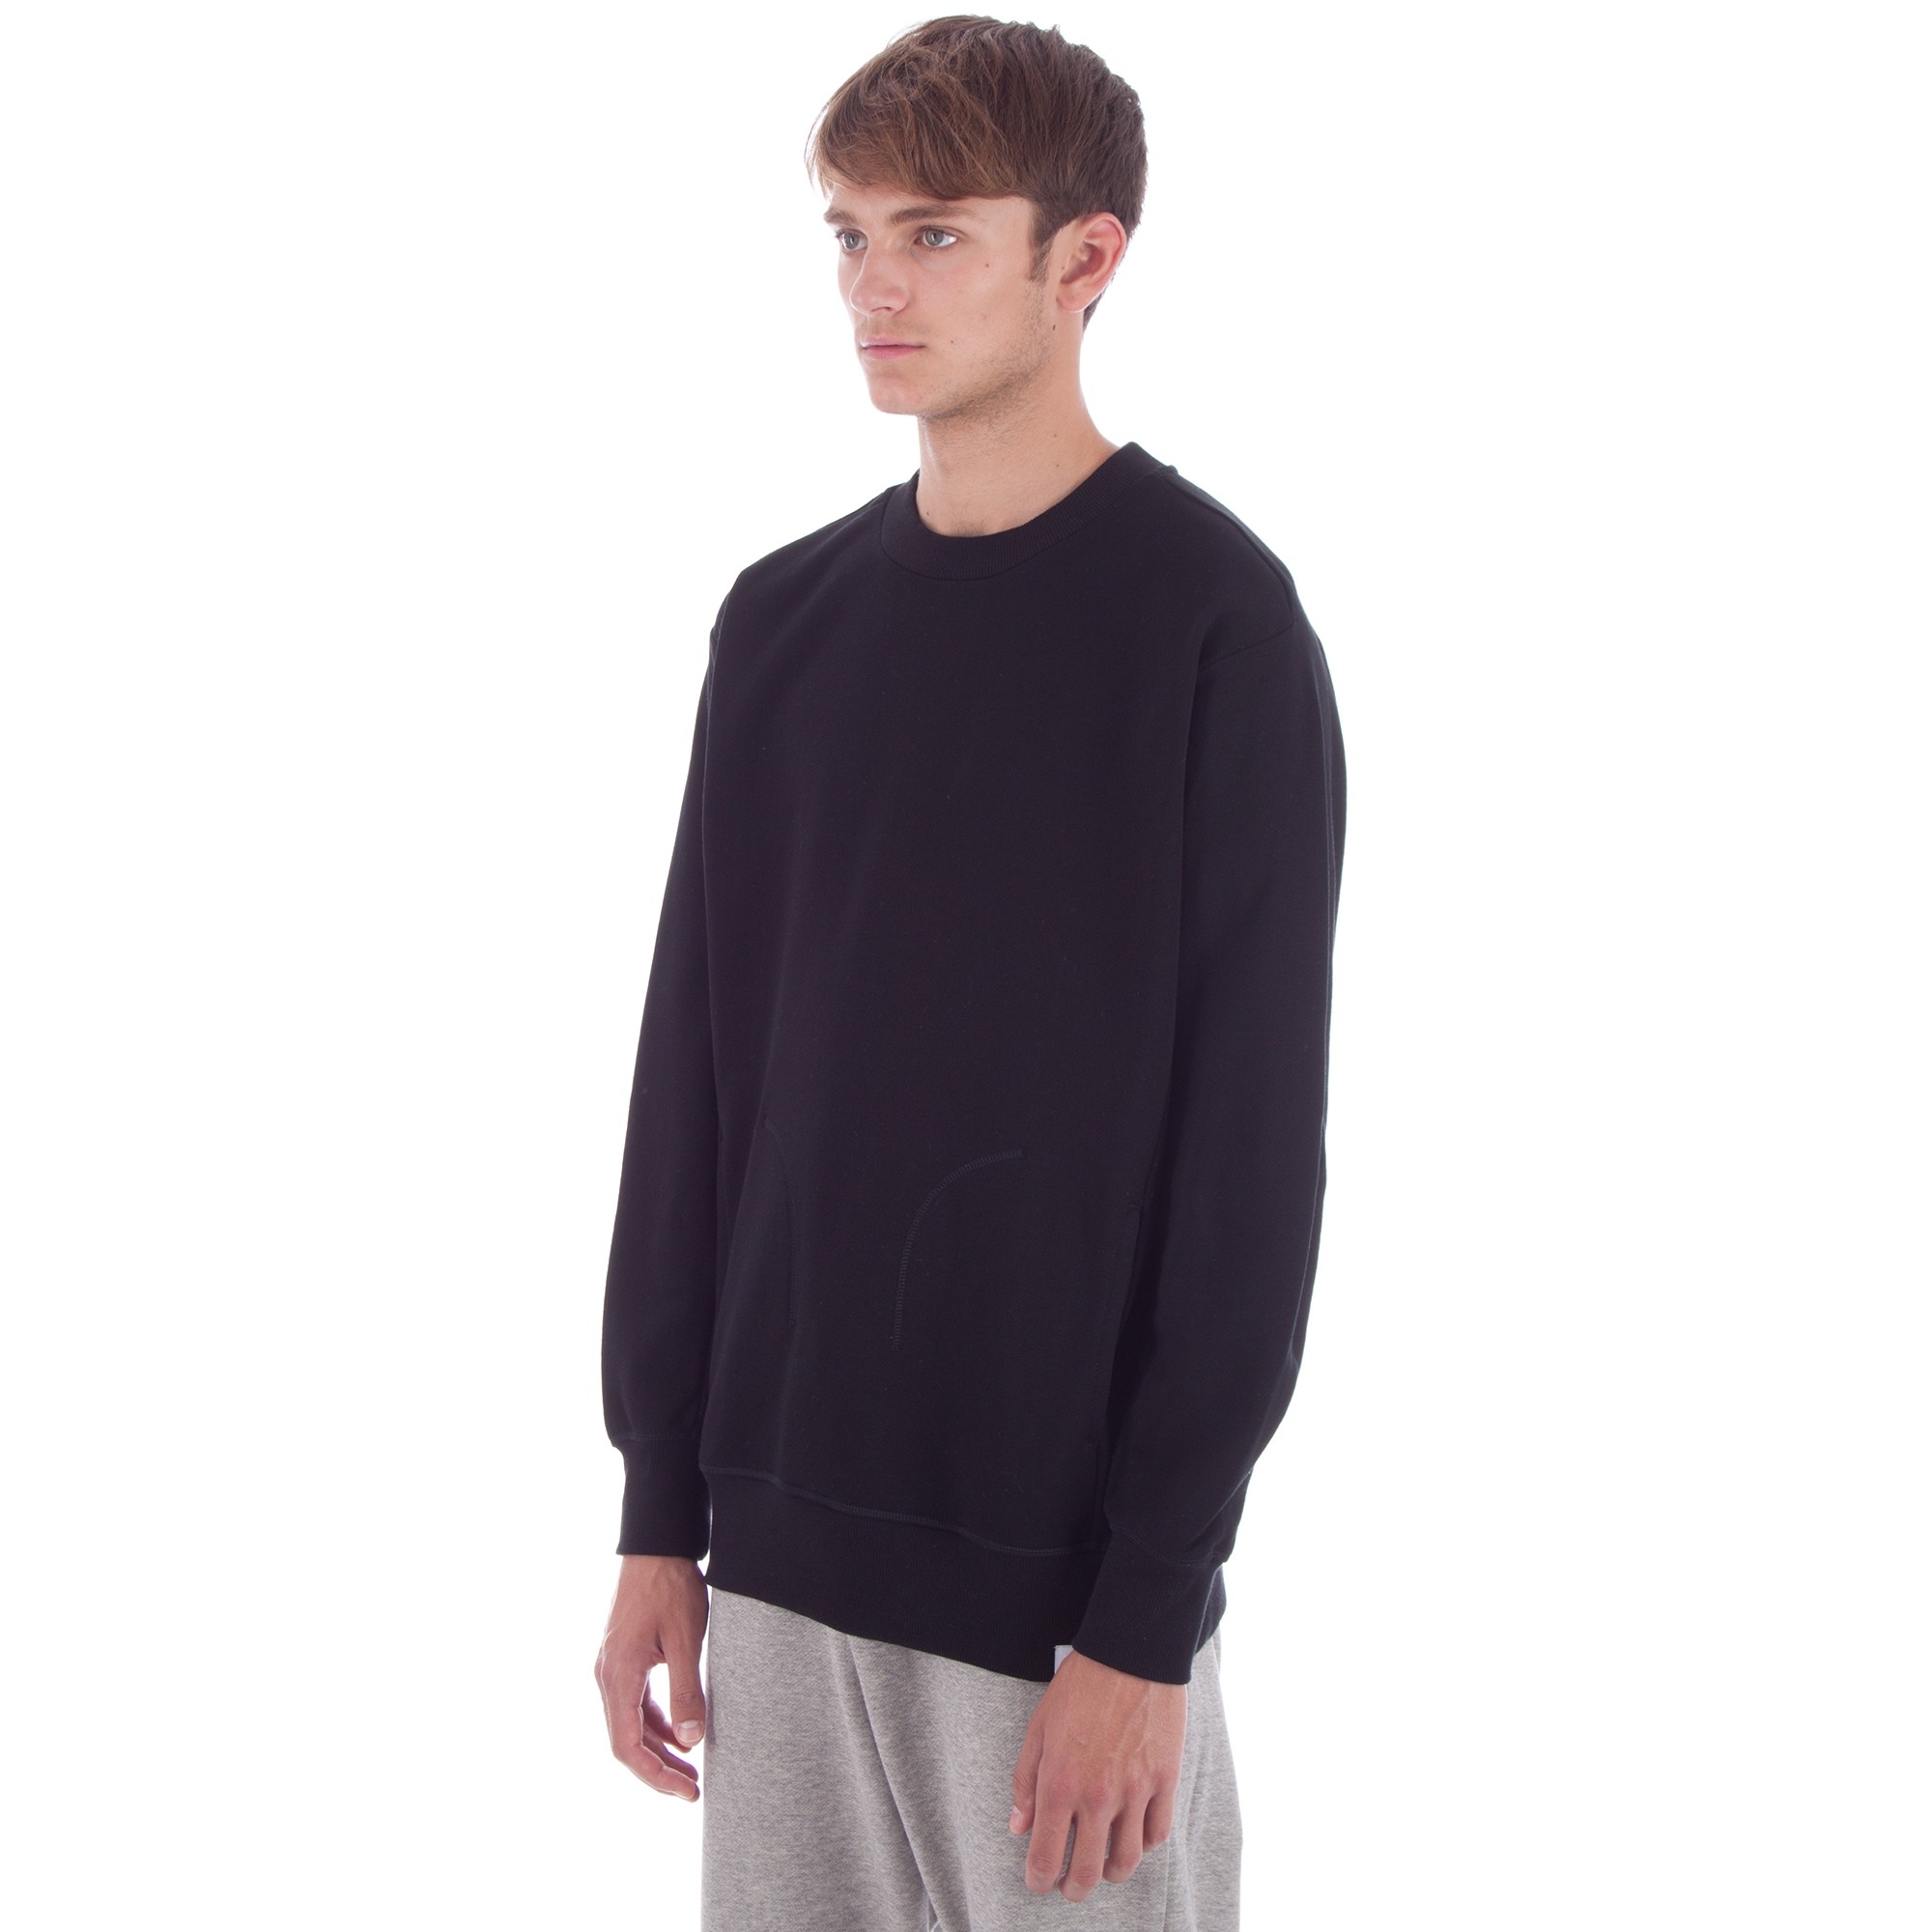 adidas Originals XbyO Crew Neck Sweatshirt (Black) - Consortium.